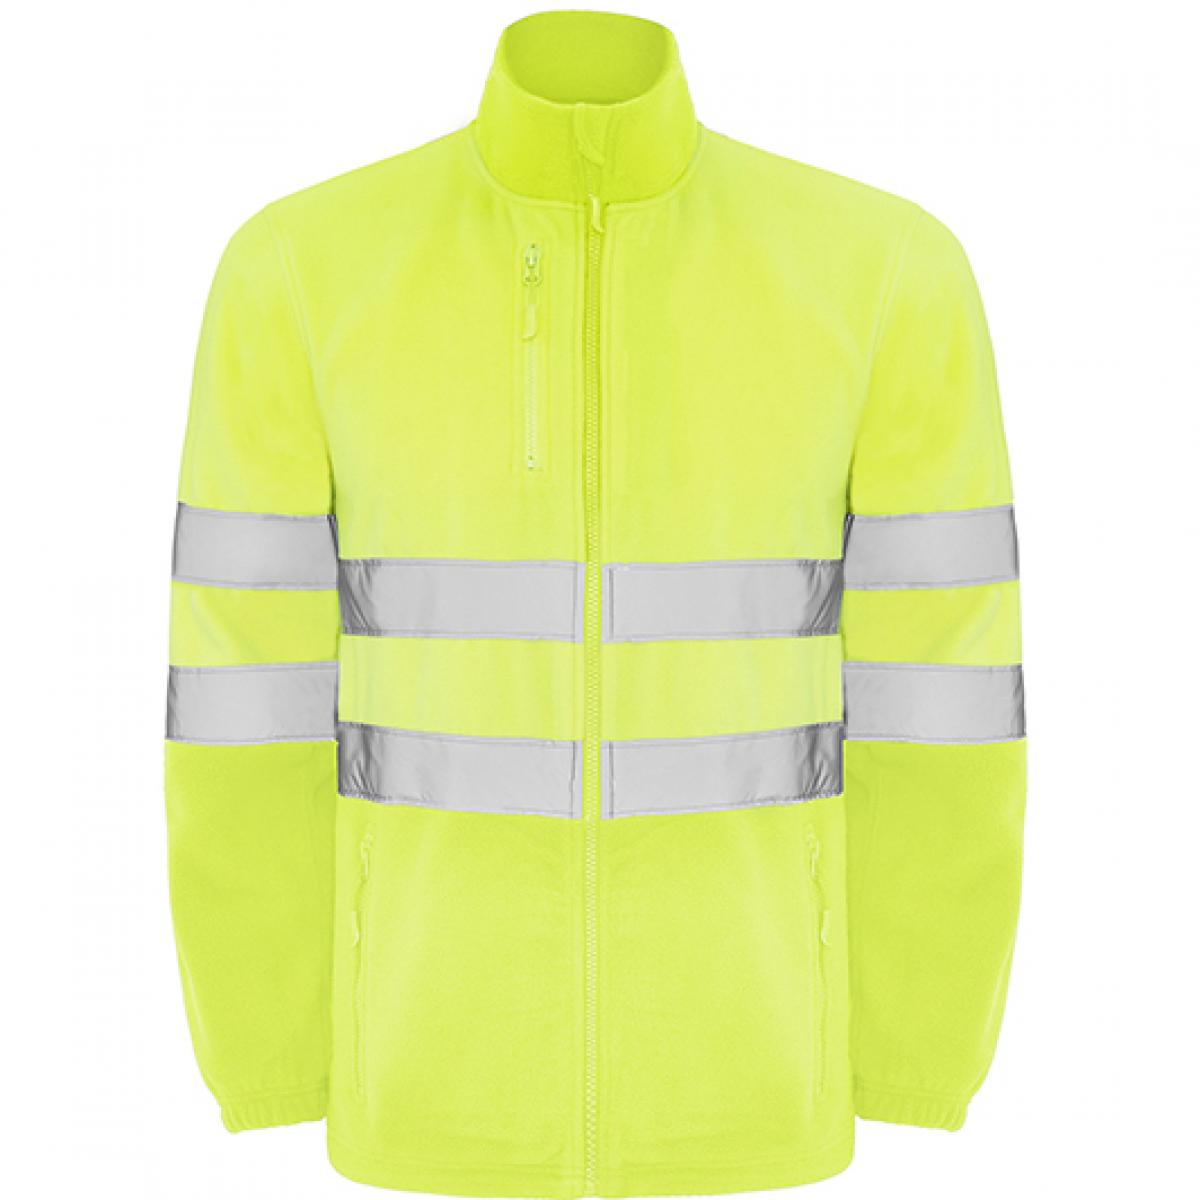 Hersteller: Roly Workwear Herstellernummer: HV9305 Artikelbezeichnung: Altair Hi-Viz Fleece Jacke mit Reflektionsstreifen Farbe: Fluor Yellow 221